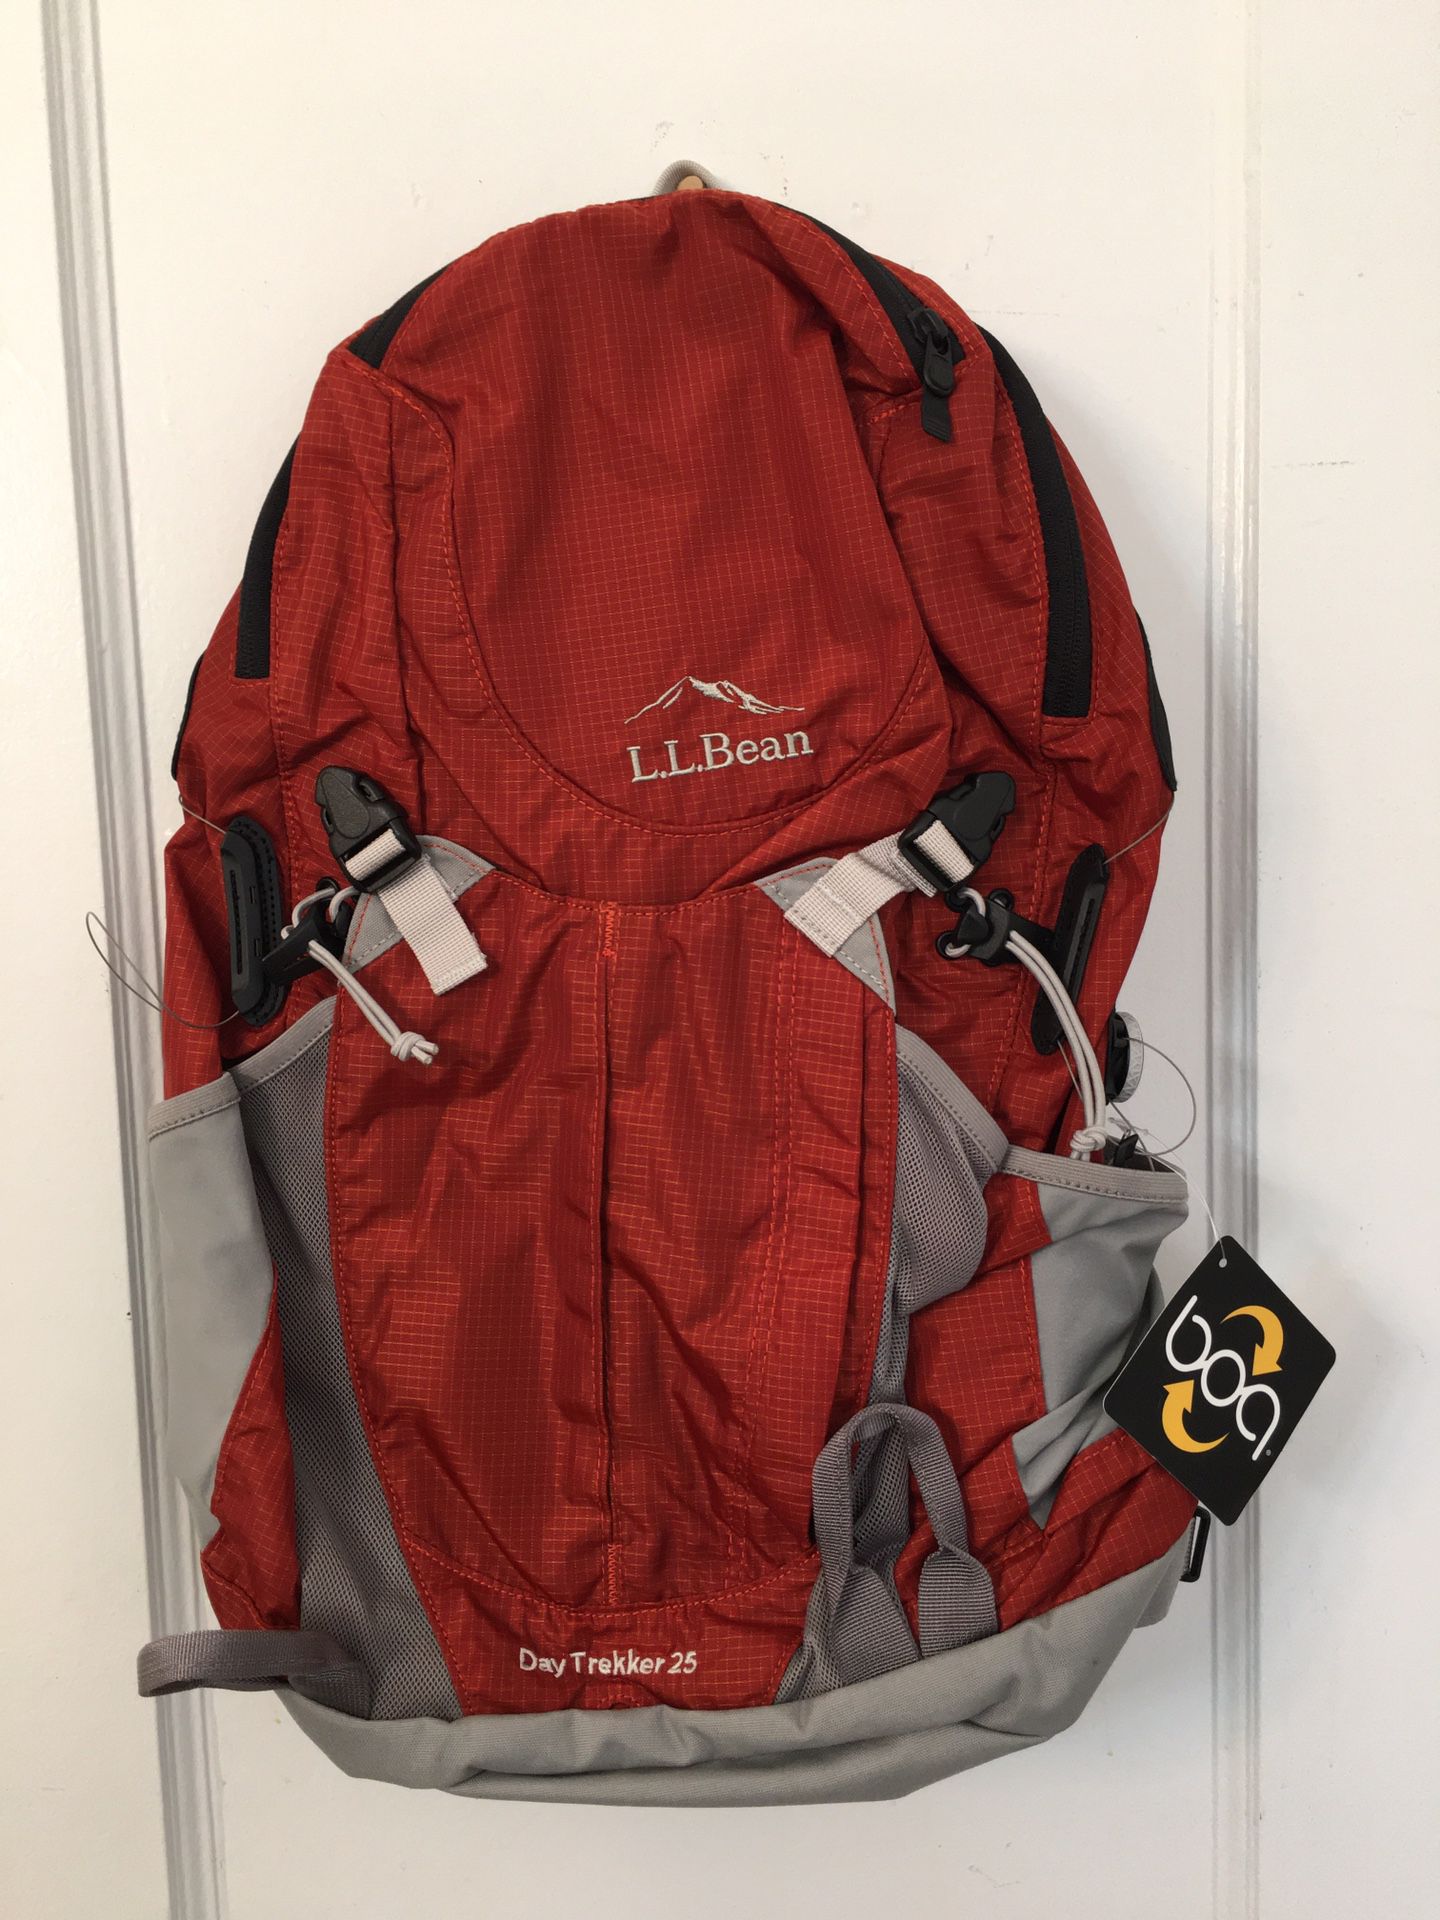  L.L Bean day trekker 25 Hiking backpack